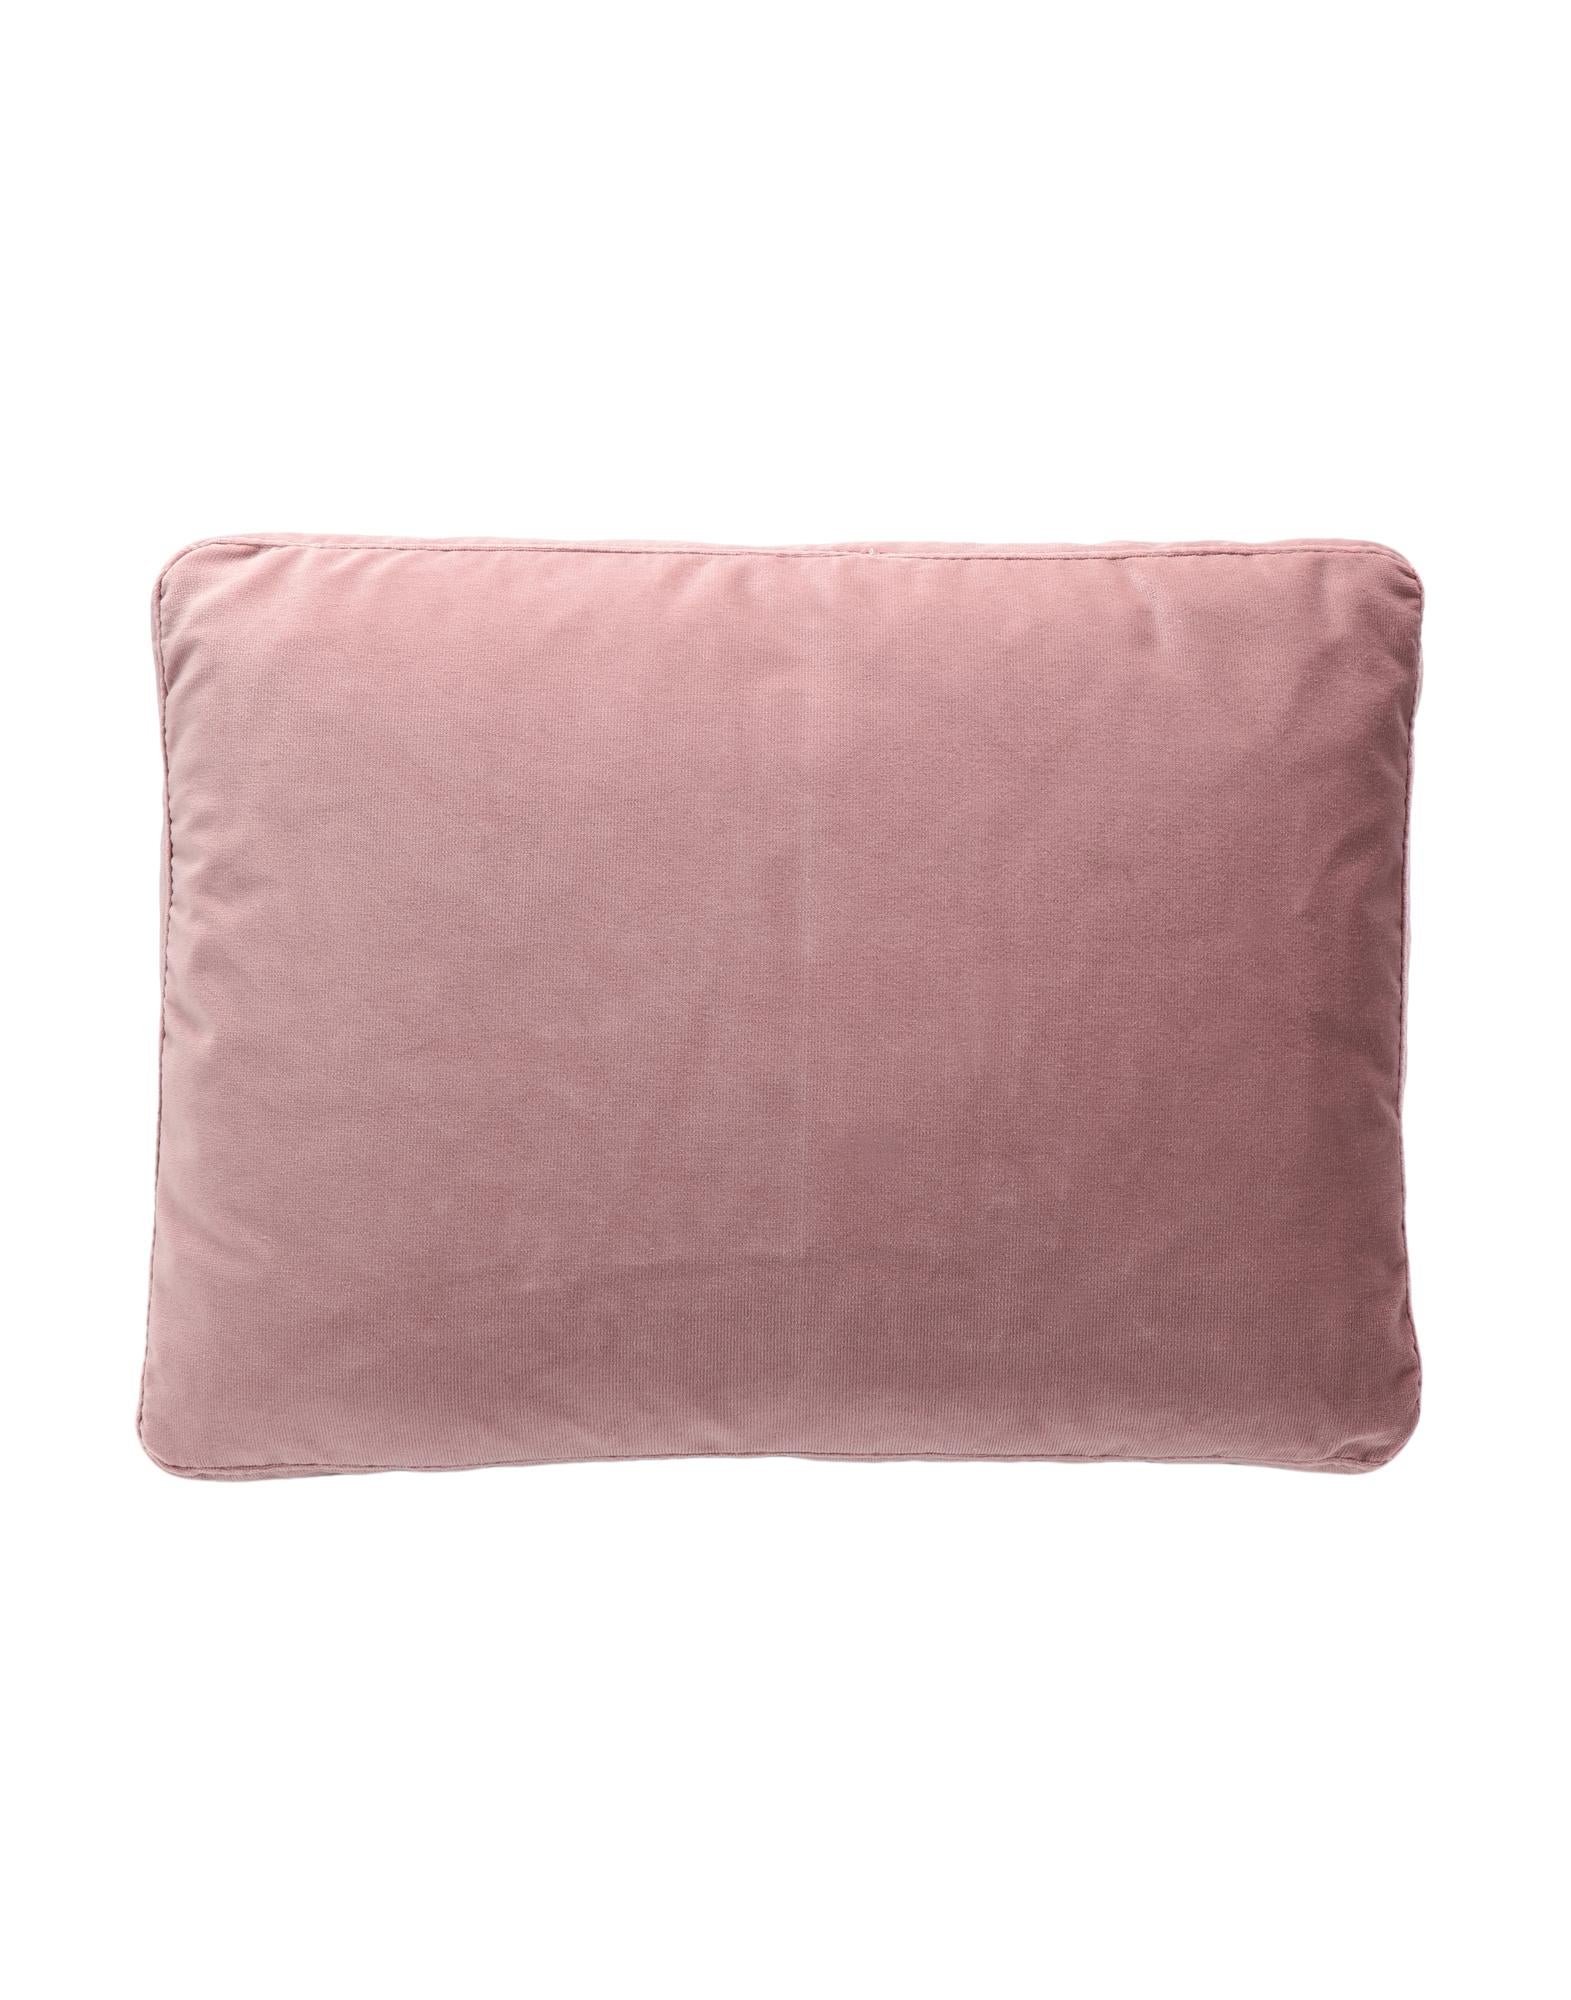 Italian Kartell Cushions Largo in Velvet by Piero Lissoni For Sale